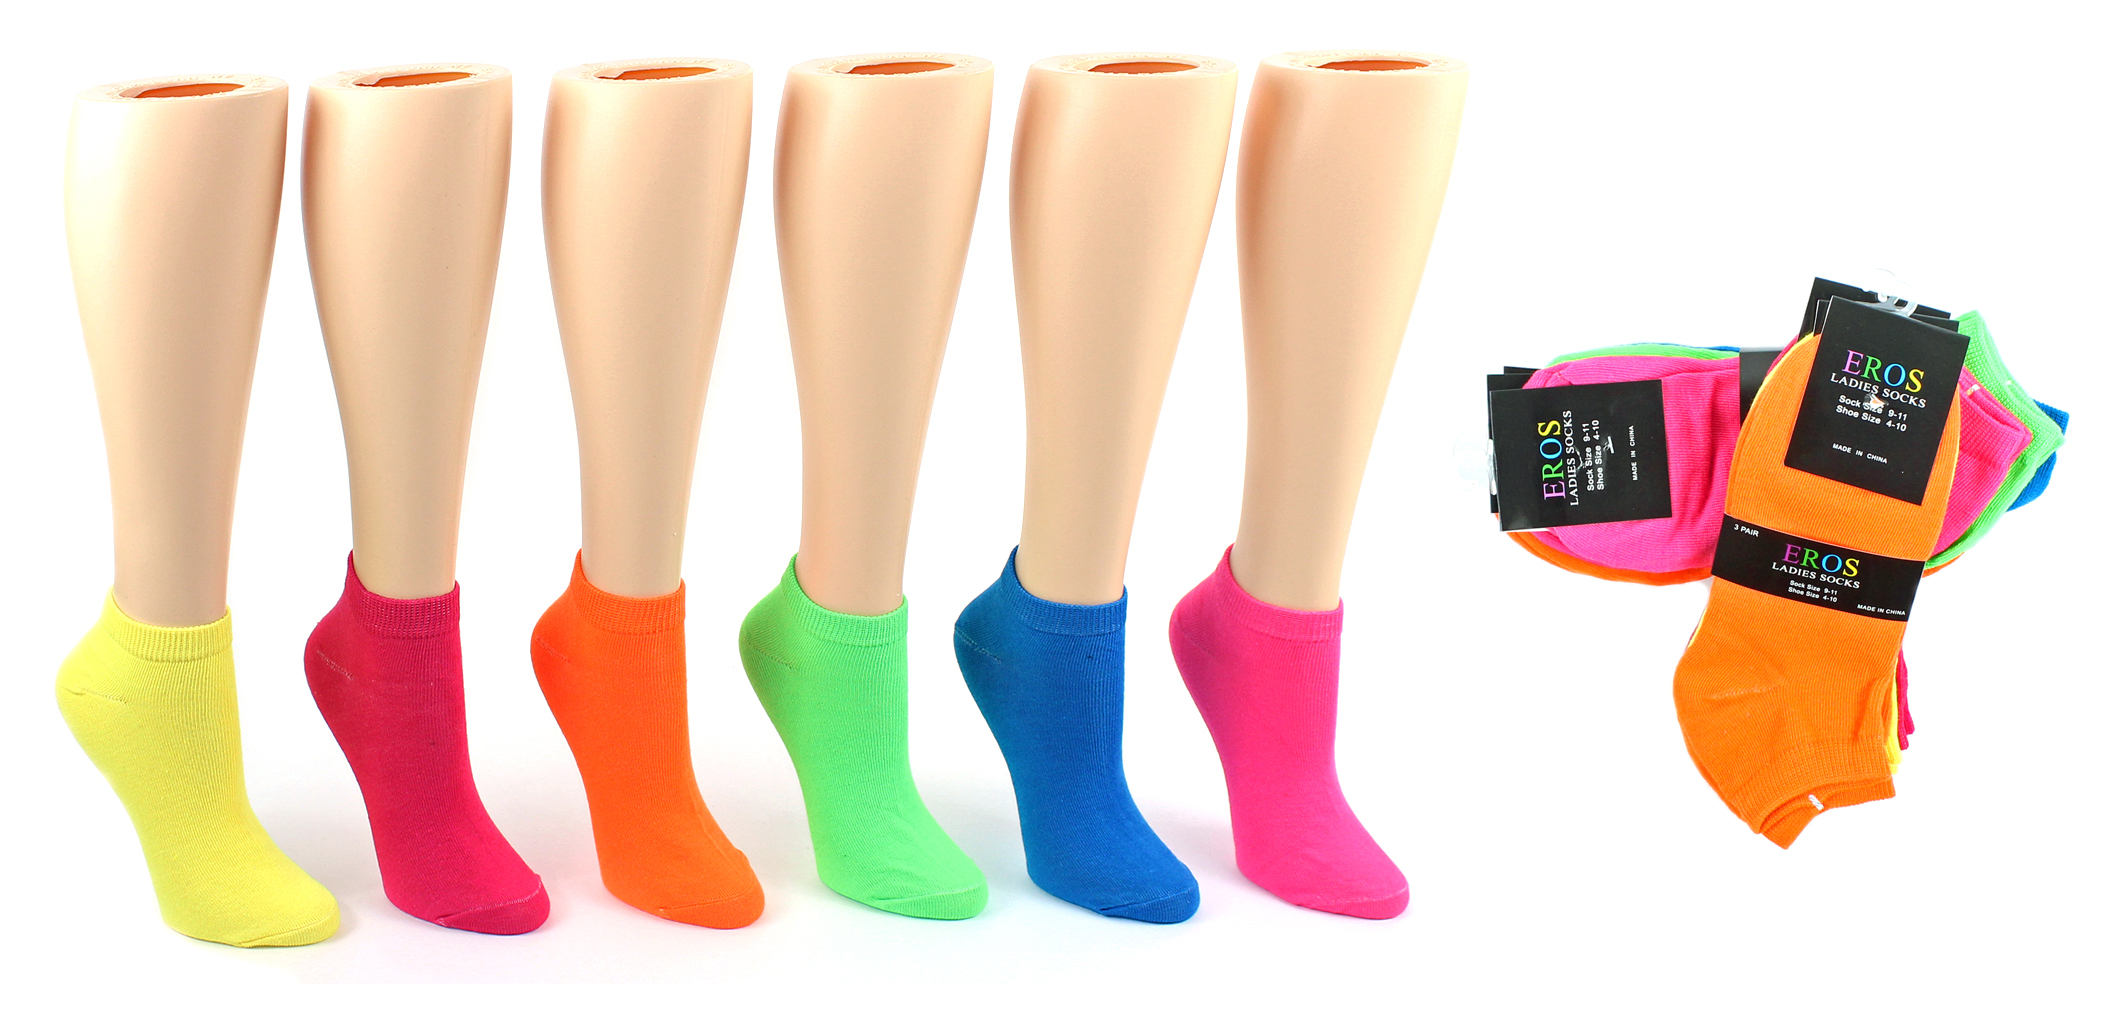 Women's Low-Cut Novelty Socks - Assorted Neon Solids - Size 9-11